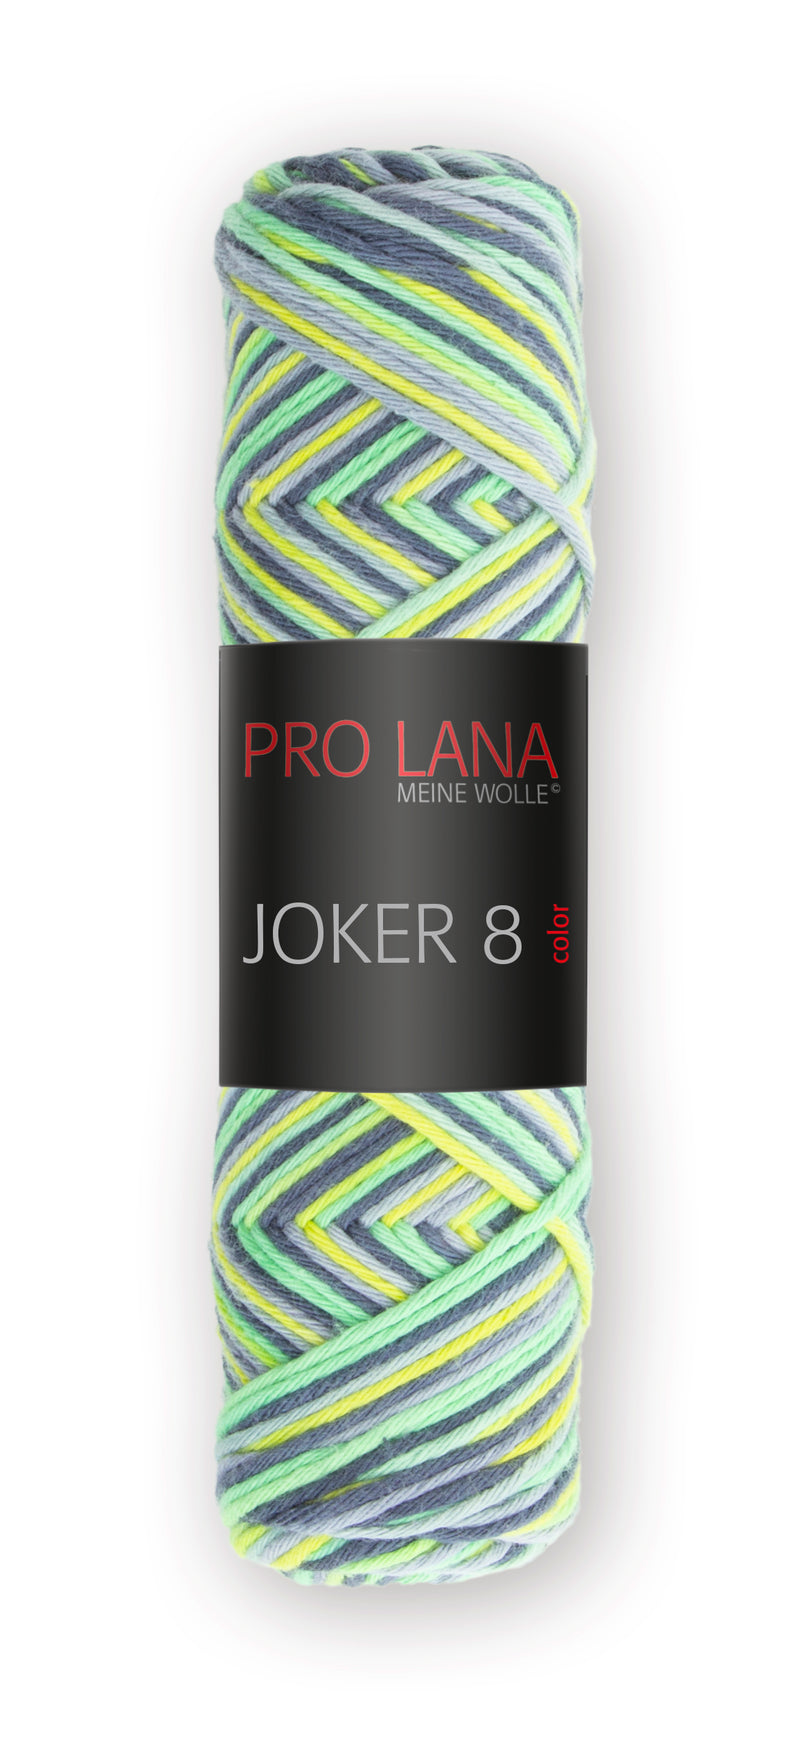 Pro Lana Joker 8 fach color